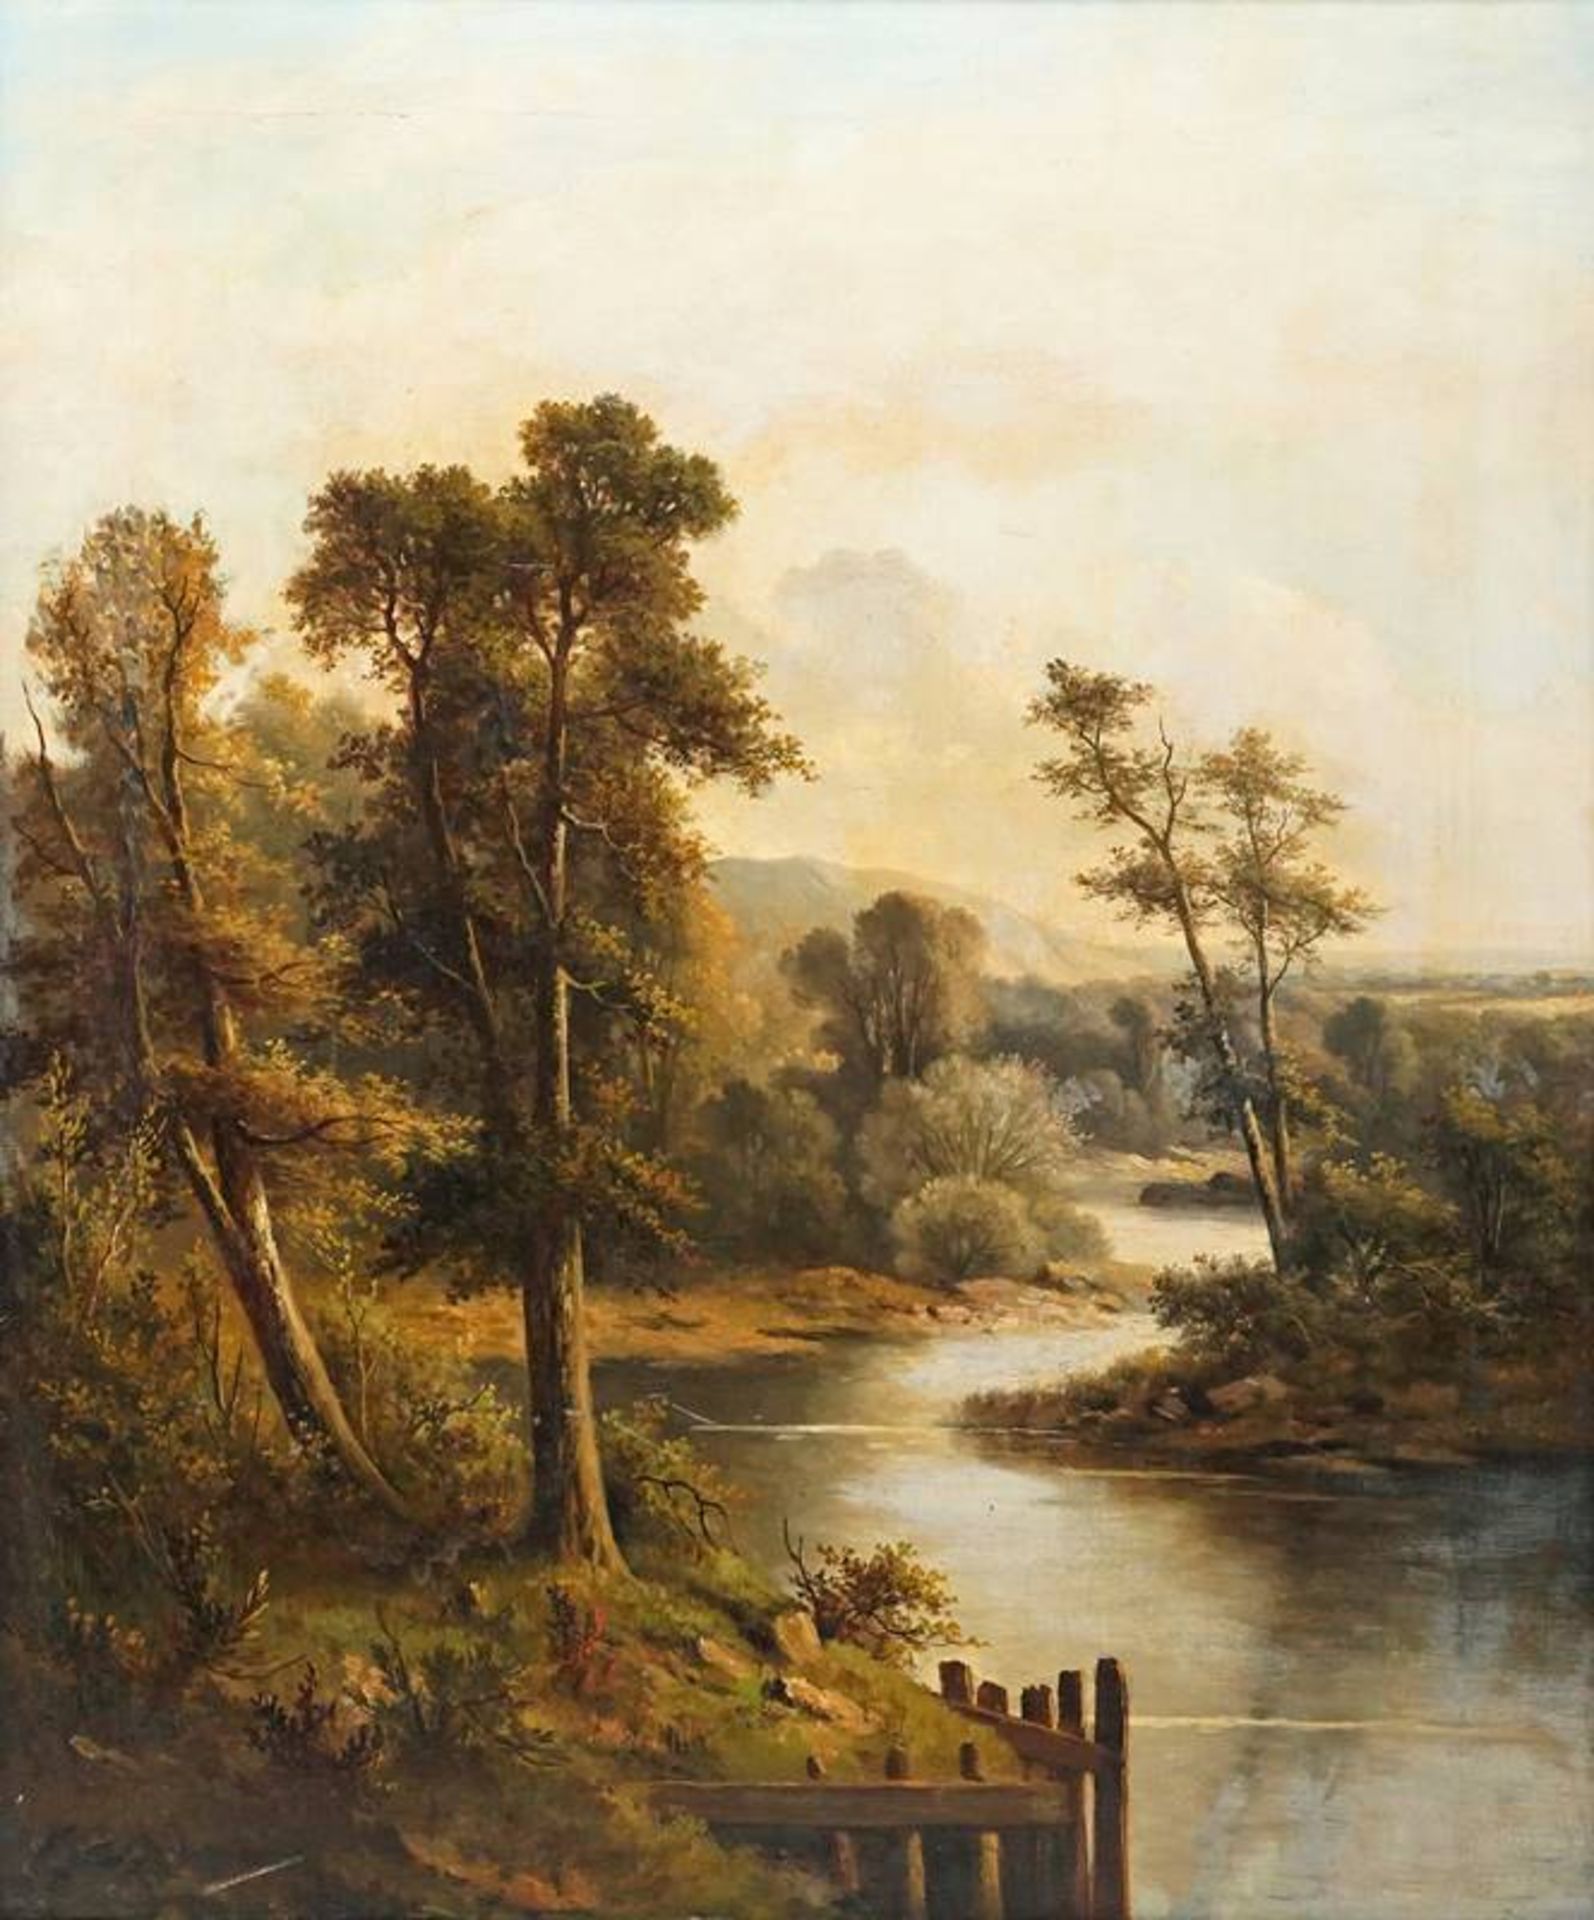 Landscape painter